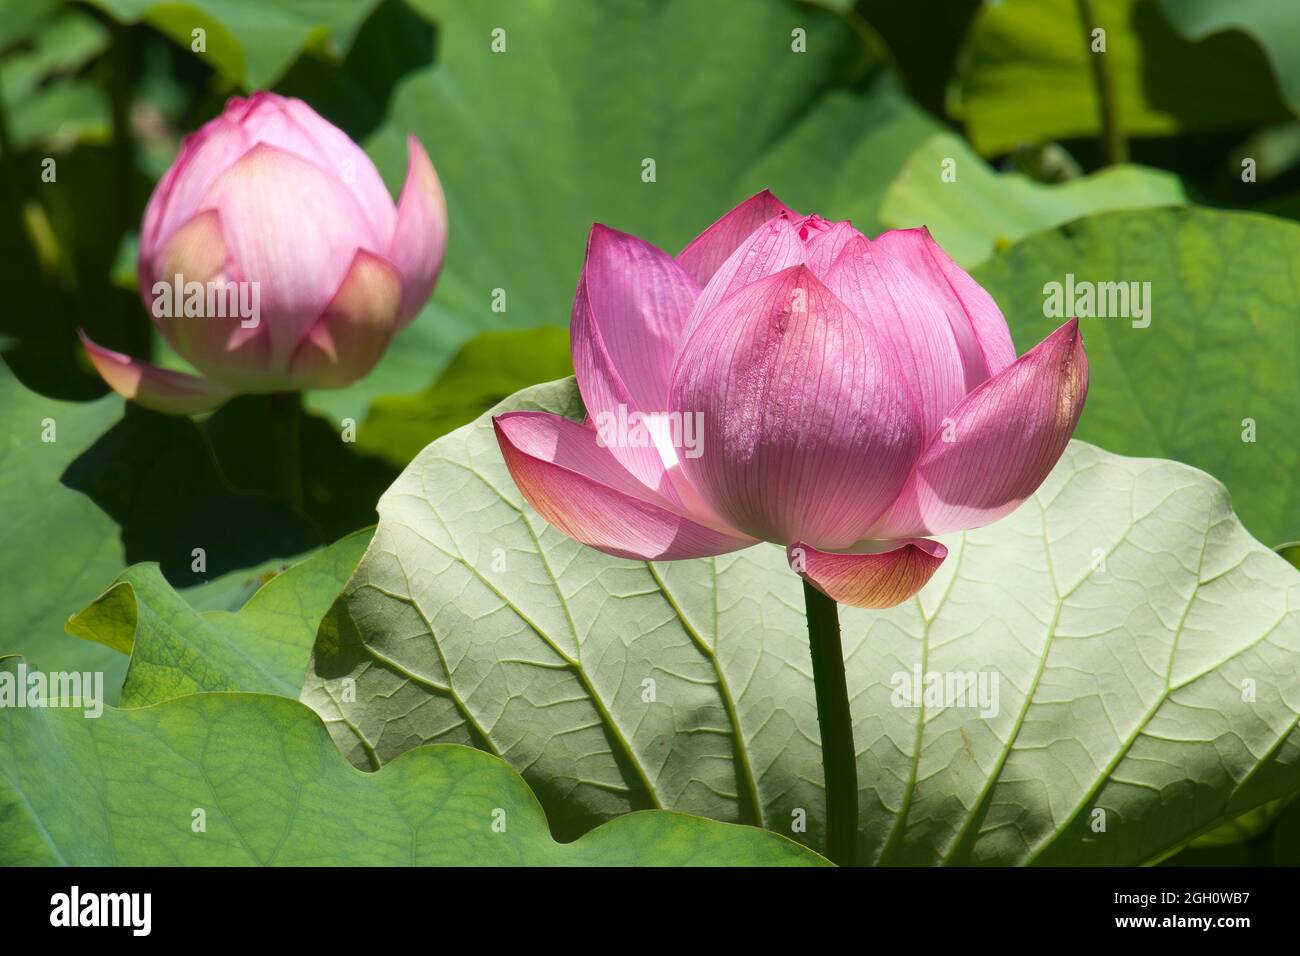 Sydney Australia, fiore rosa di un nelibbo nucifera, noto anche come loto indiano, loto sacro Foto Stock